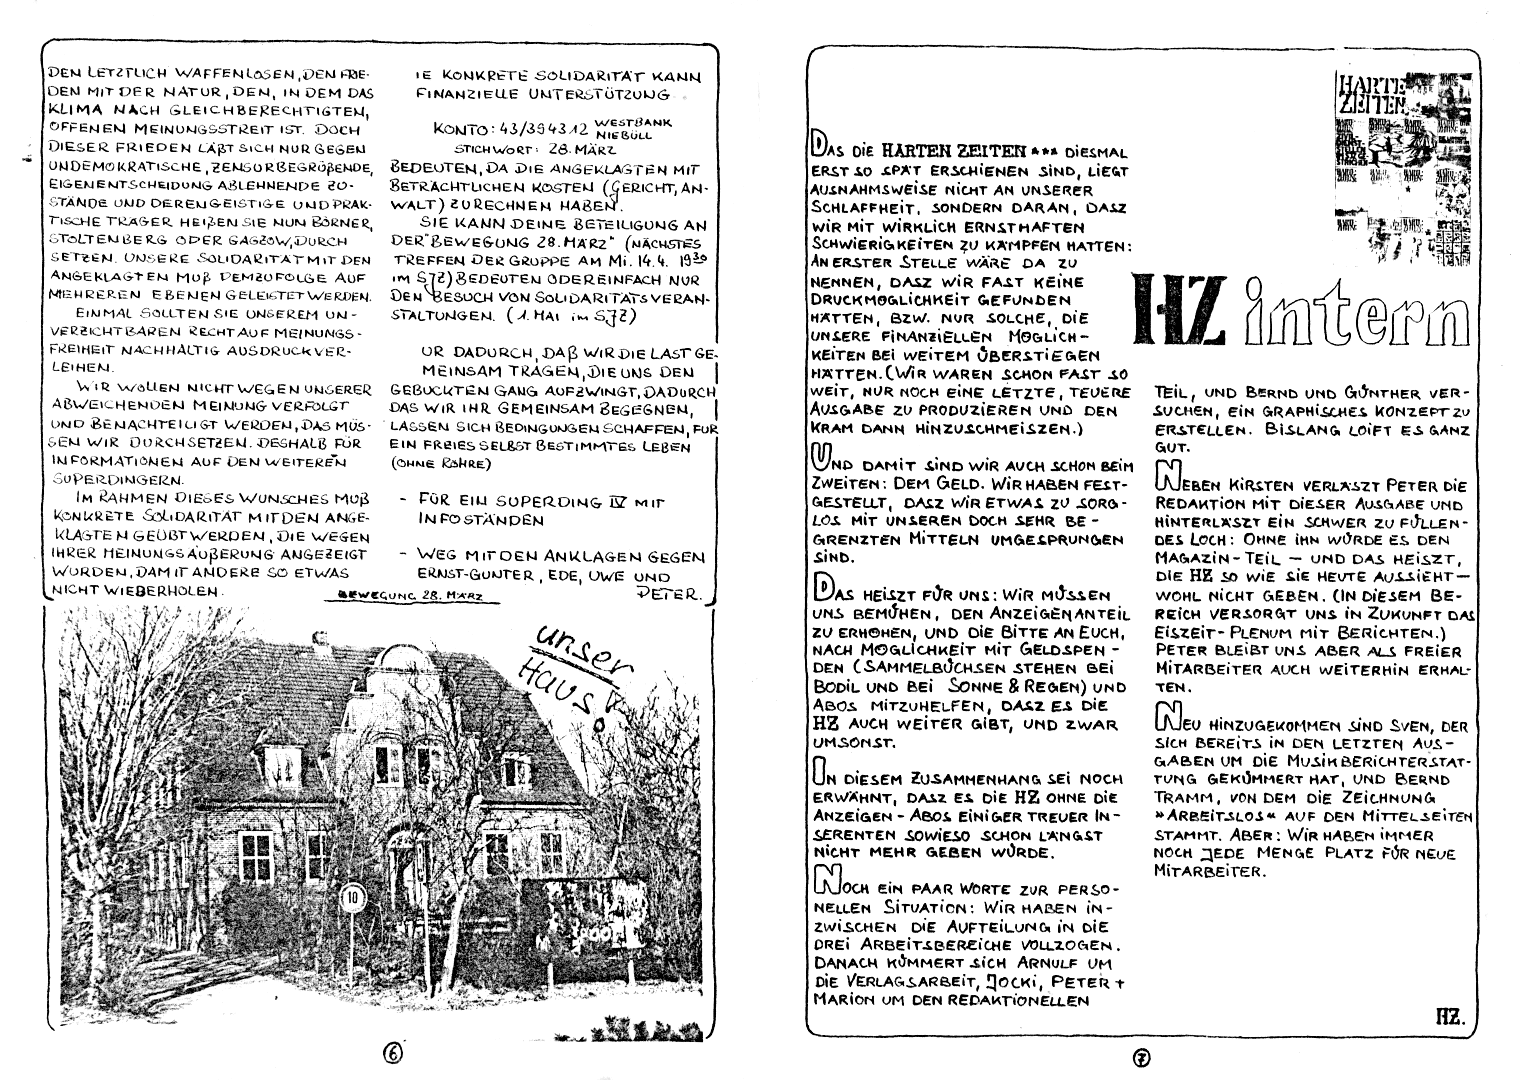 HZ 11 - Seite 6 und 7